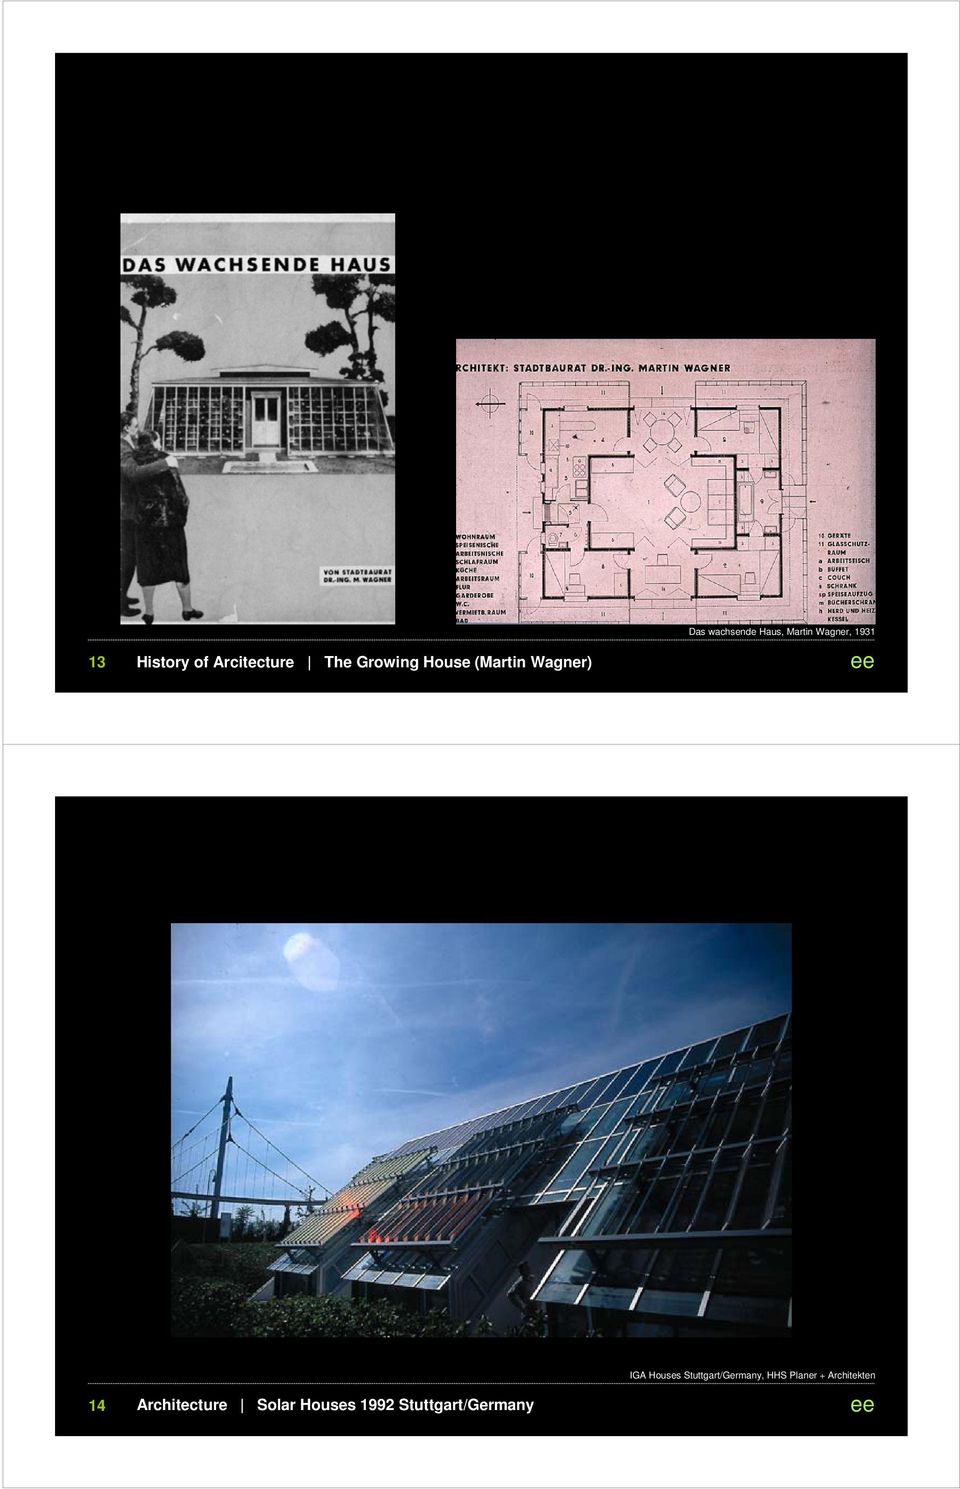 Architecture Solar Houses 1992 Stuttgart/Germany